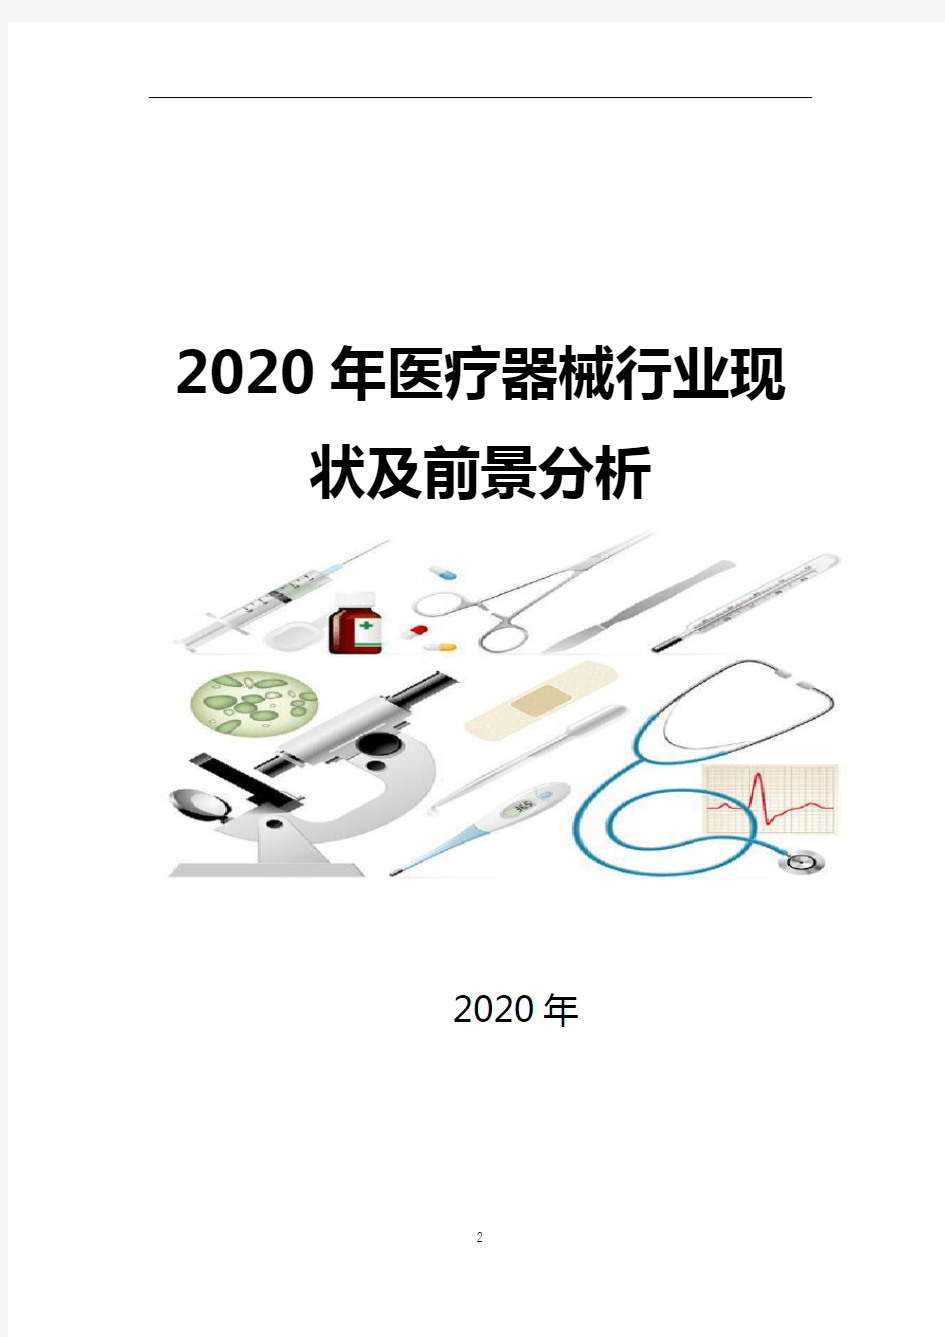 2020年医疗器械现状及前景分析